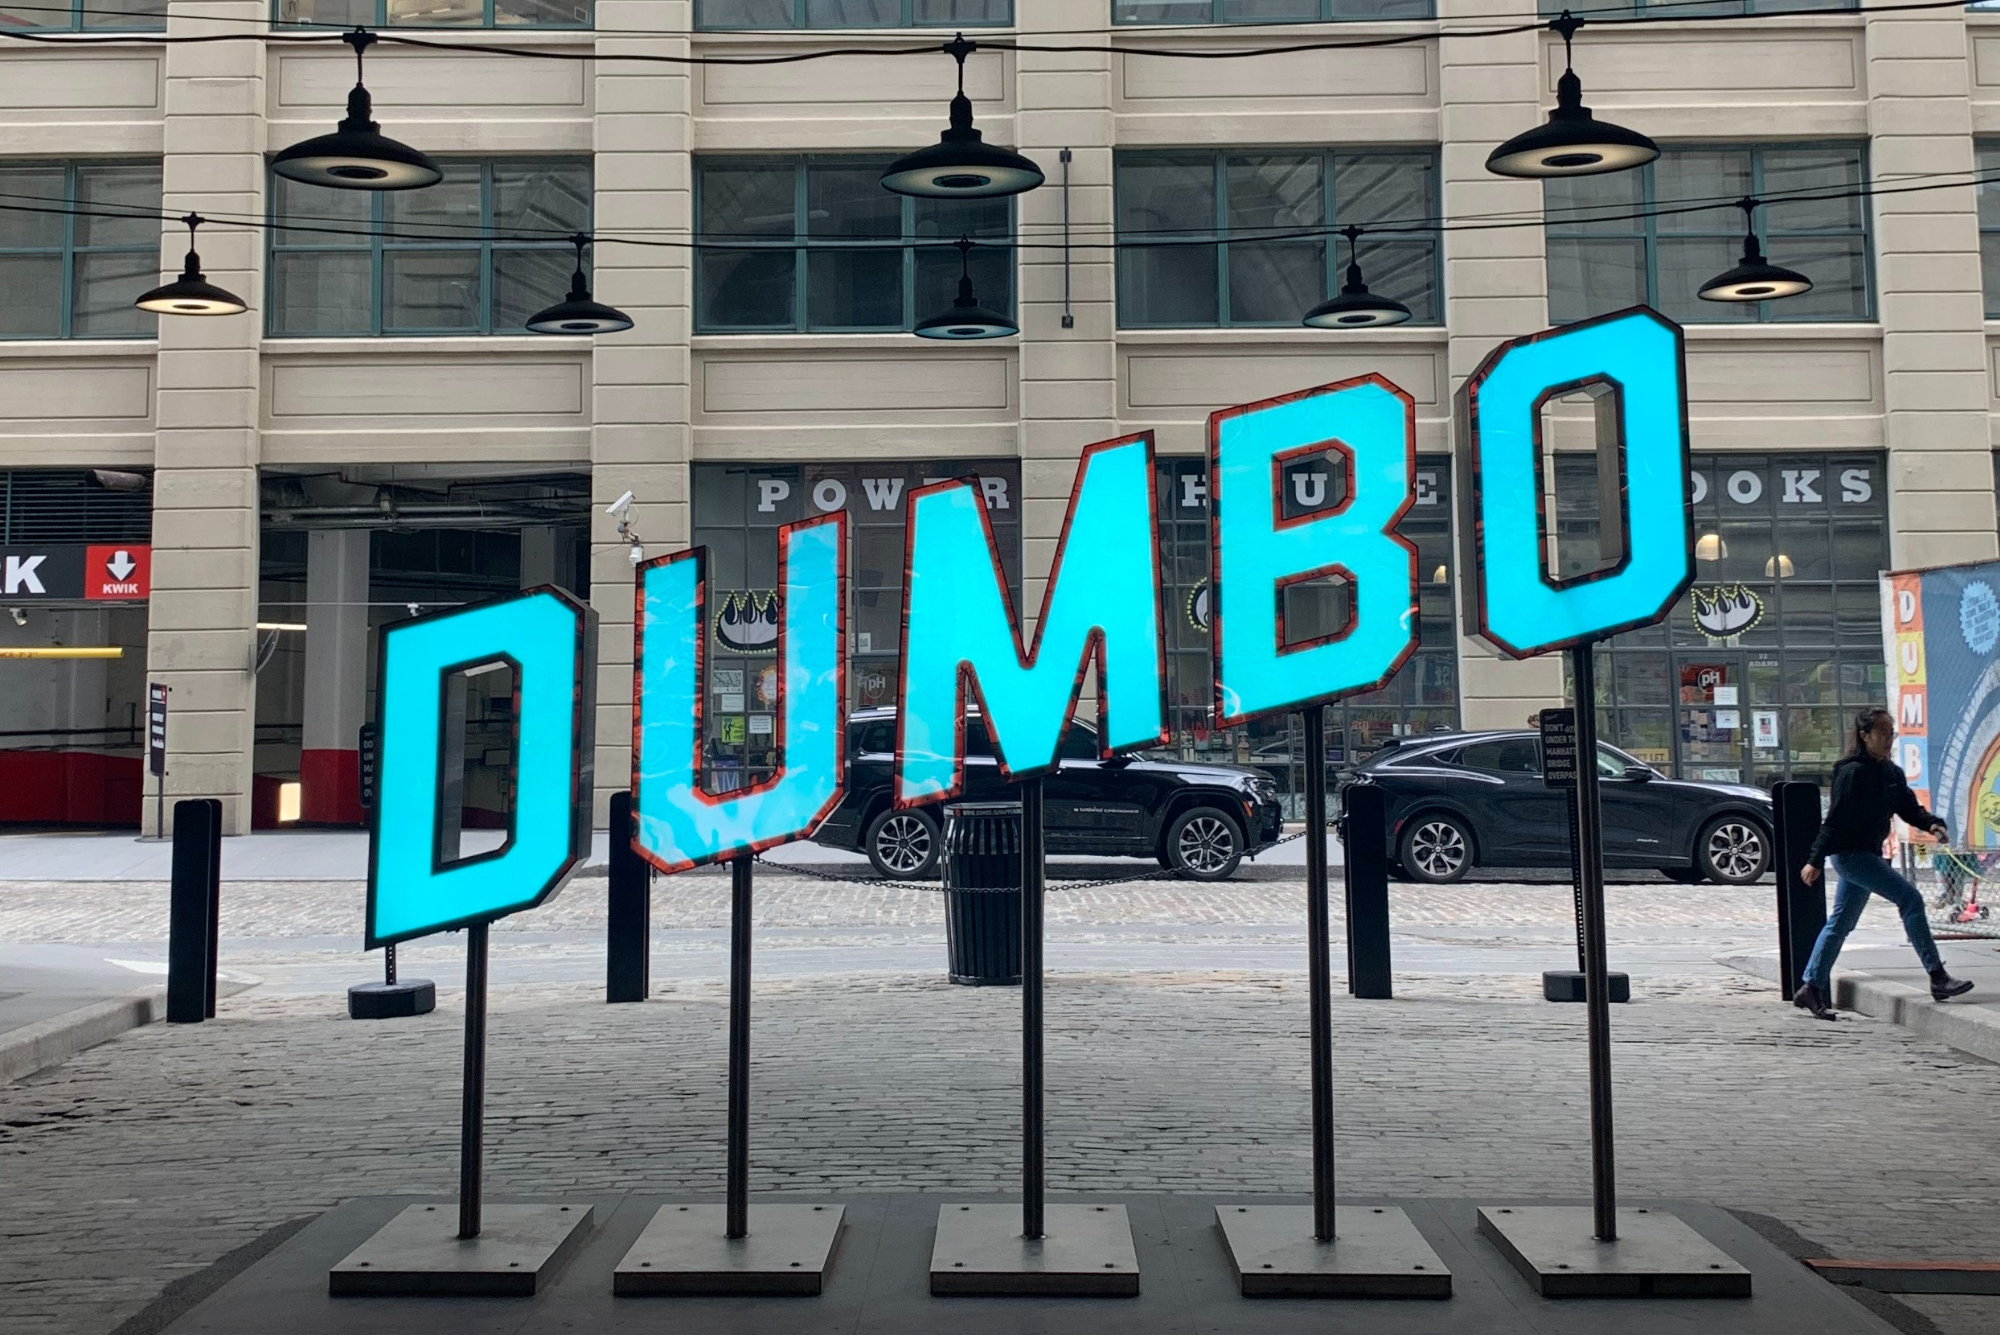 Neighborhood guide for the Brooklyn neighborhood of Dumbo in New York.